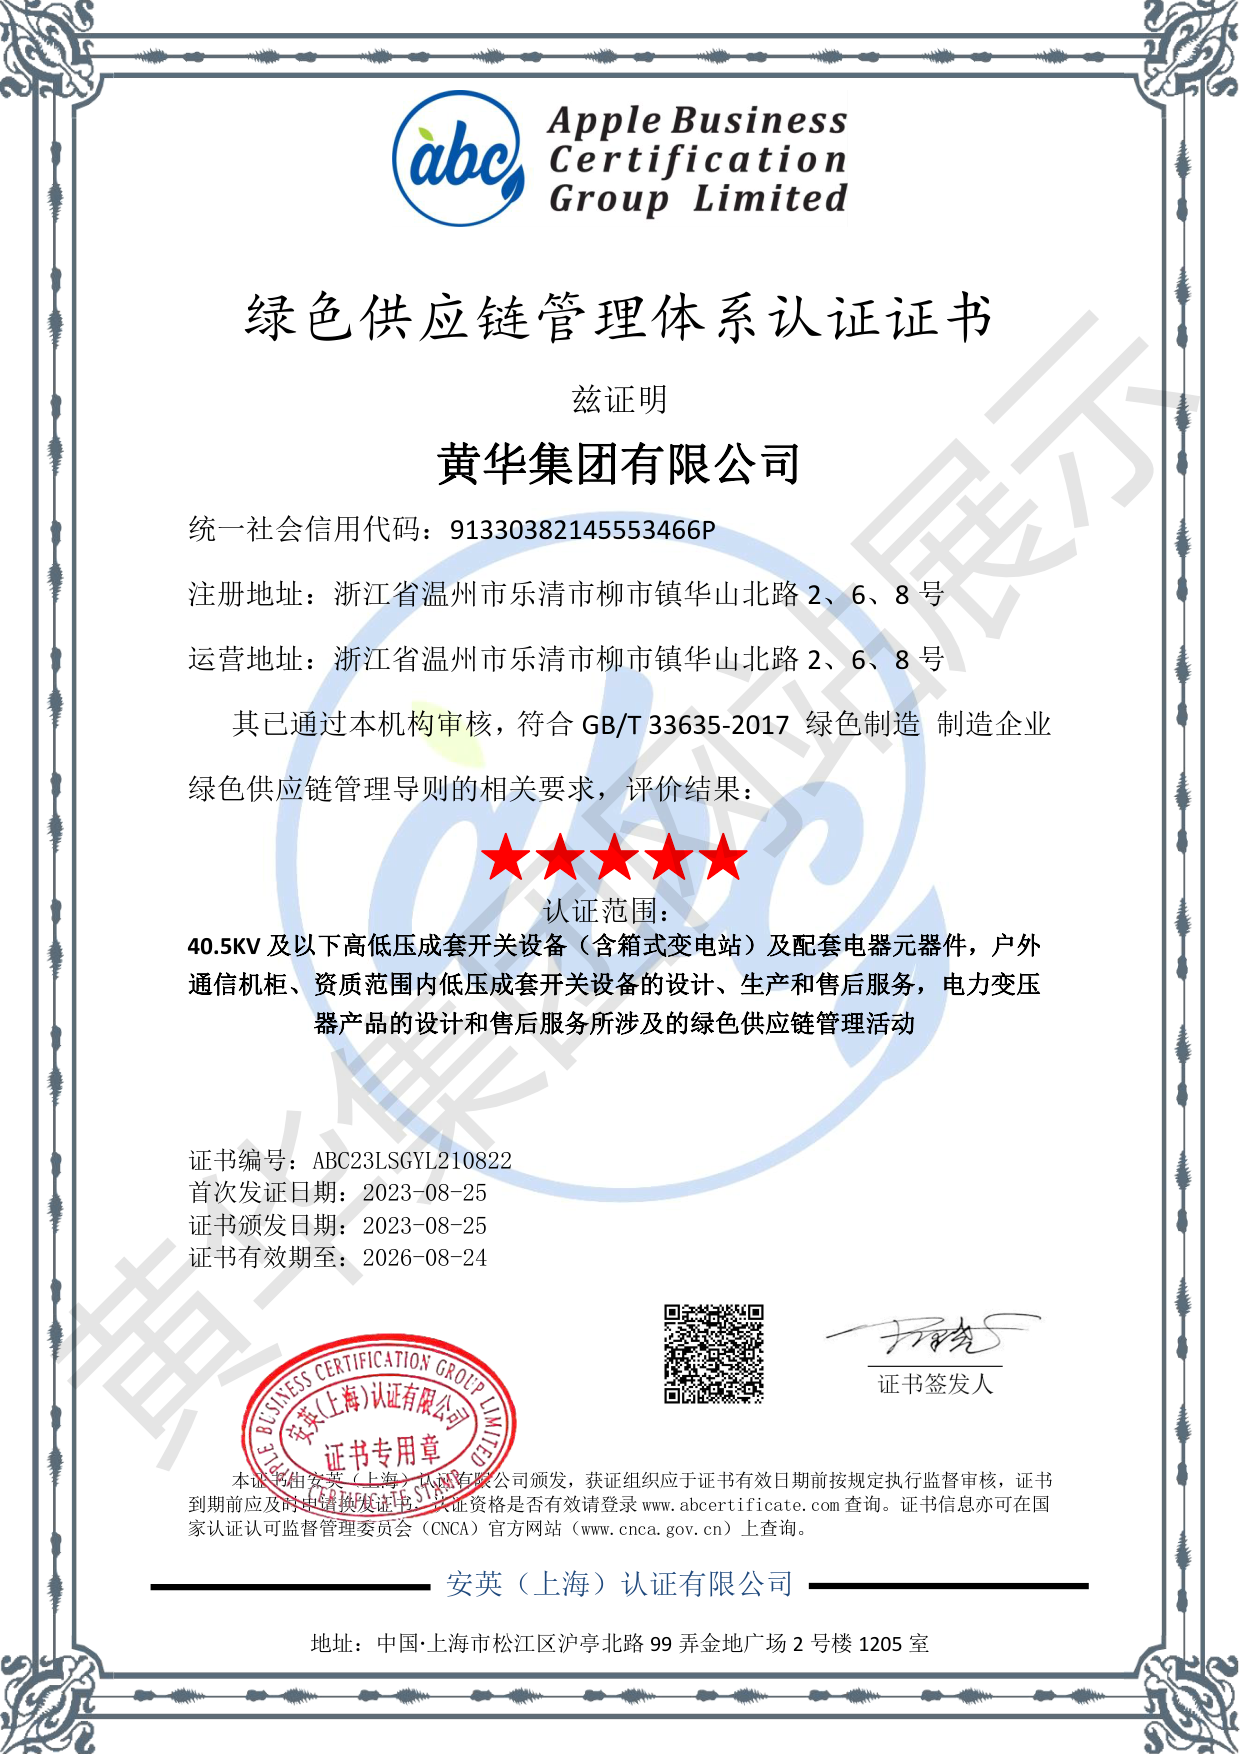 绿色供应链管理体系认证证书